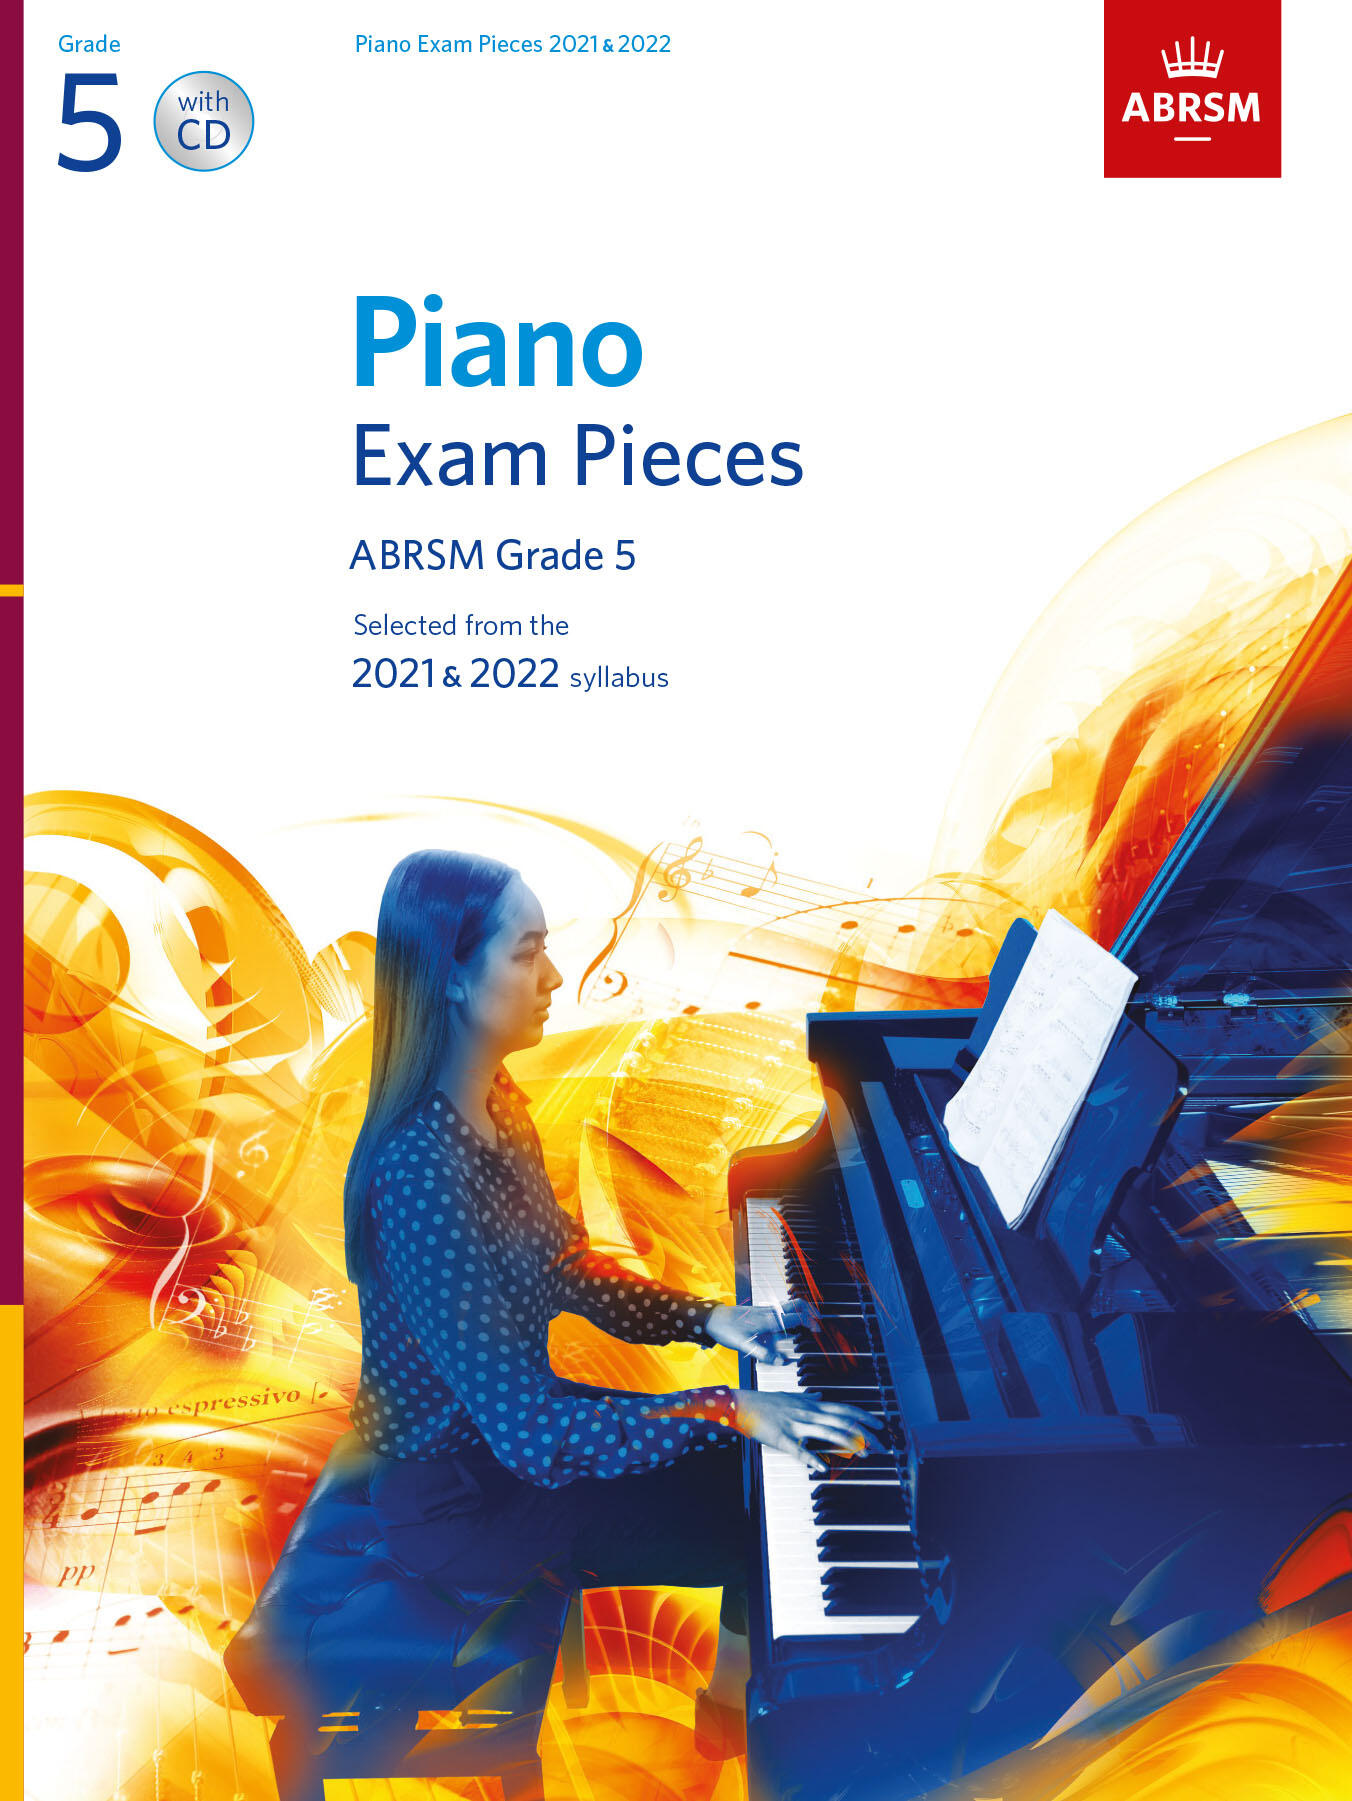 ABRSM Piano Exam Pieces 2021 & 2022 - Grade 5 + CD : photo 1